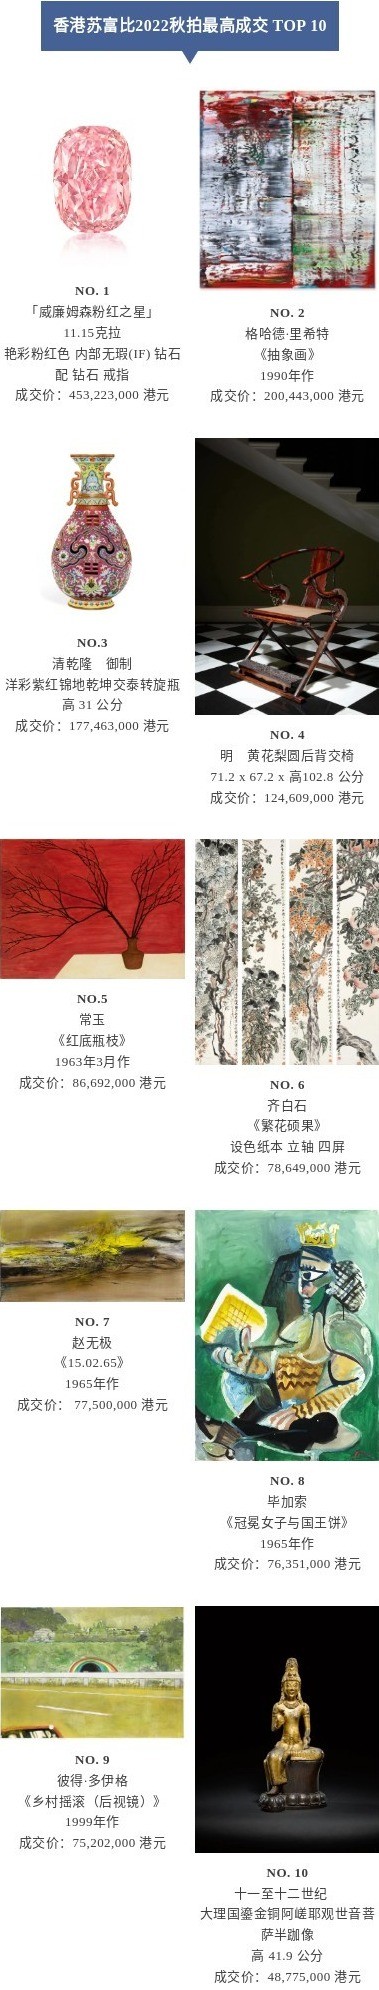 香港苏富比秋拍斩获34.6亿港元，高端艺术品市场不缺钱?